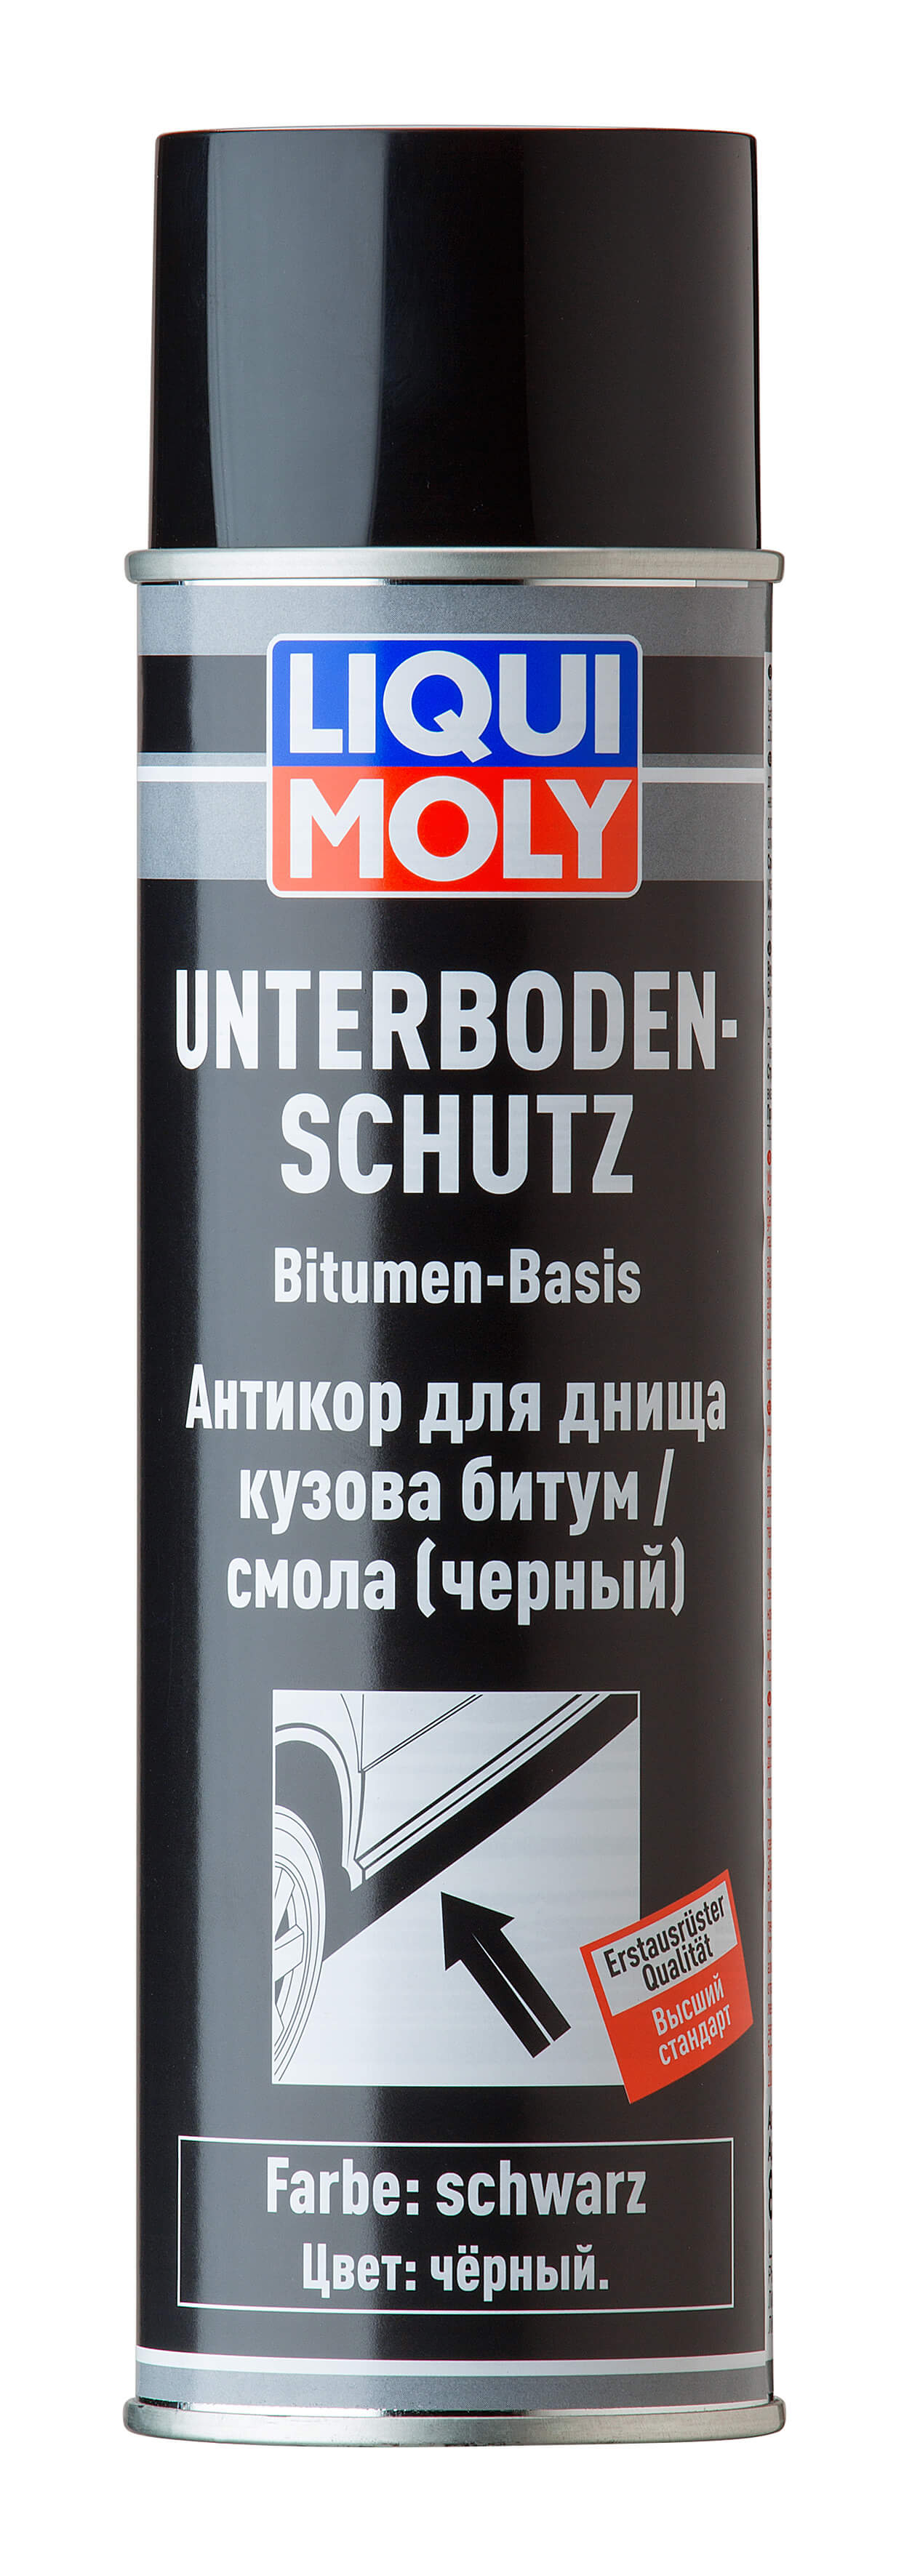 Антикор для днища кузова битум/смола (черный) Unterboden-Schutz Bitumen schwarz (spray)  0,5L